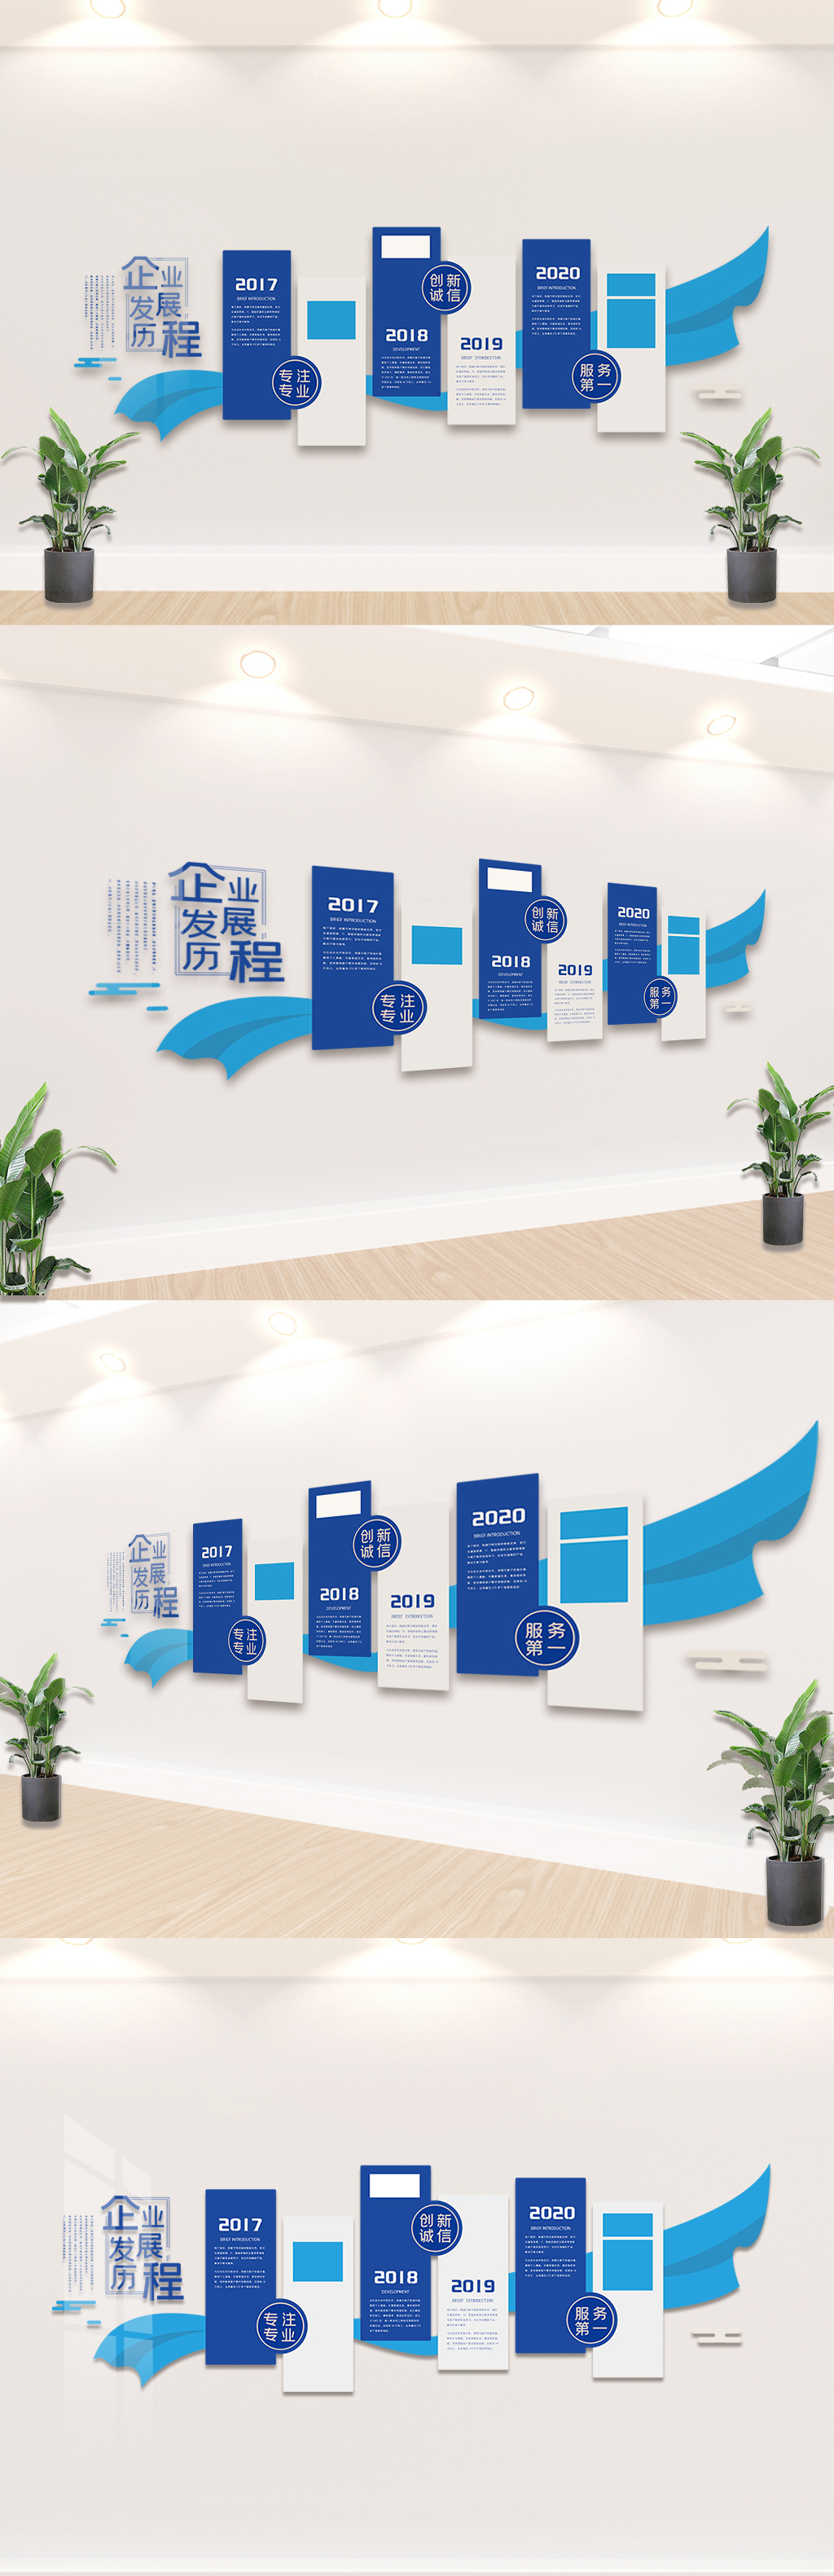 蓝色企业发展历程内容文化墙设计模板图片